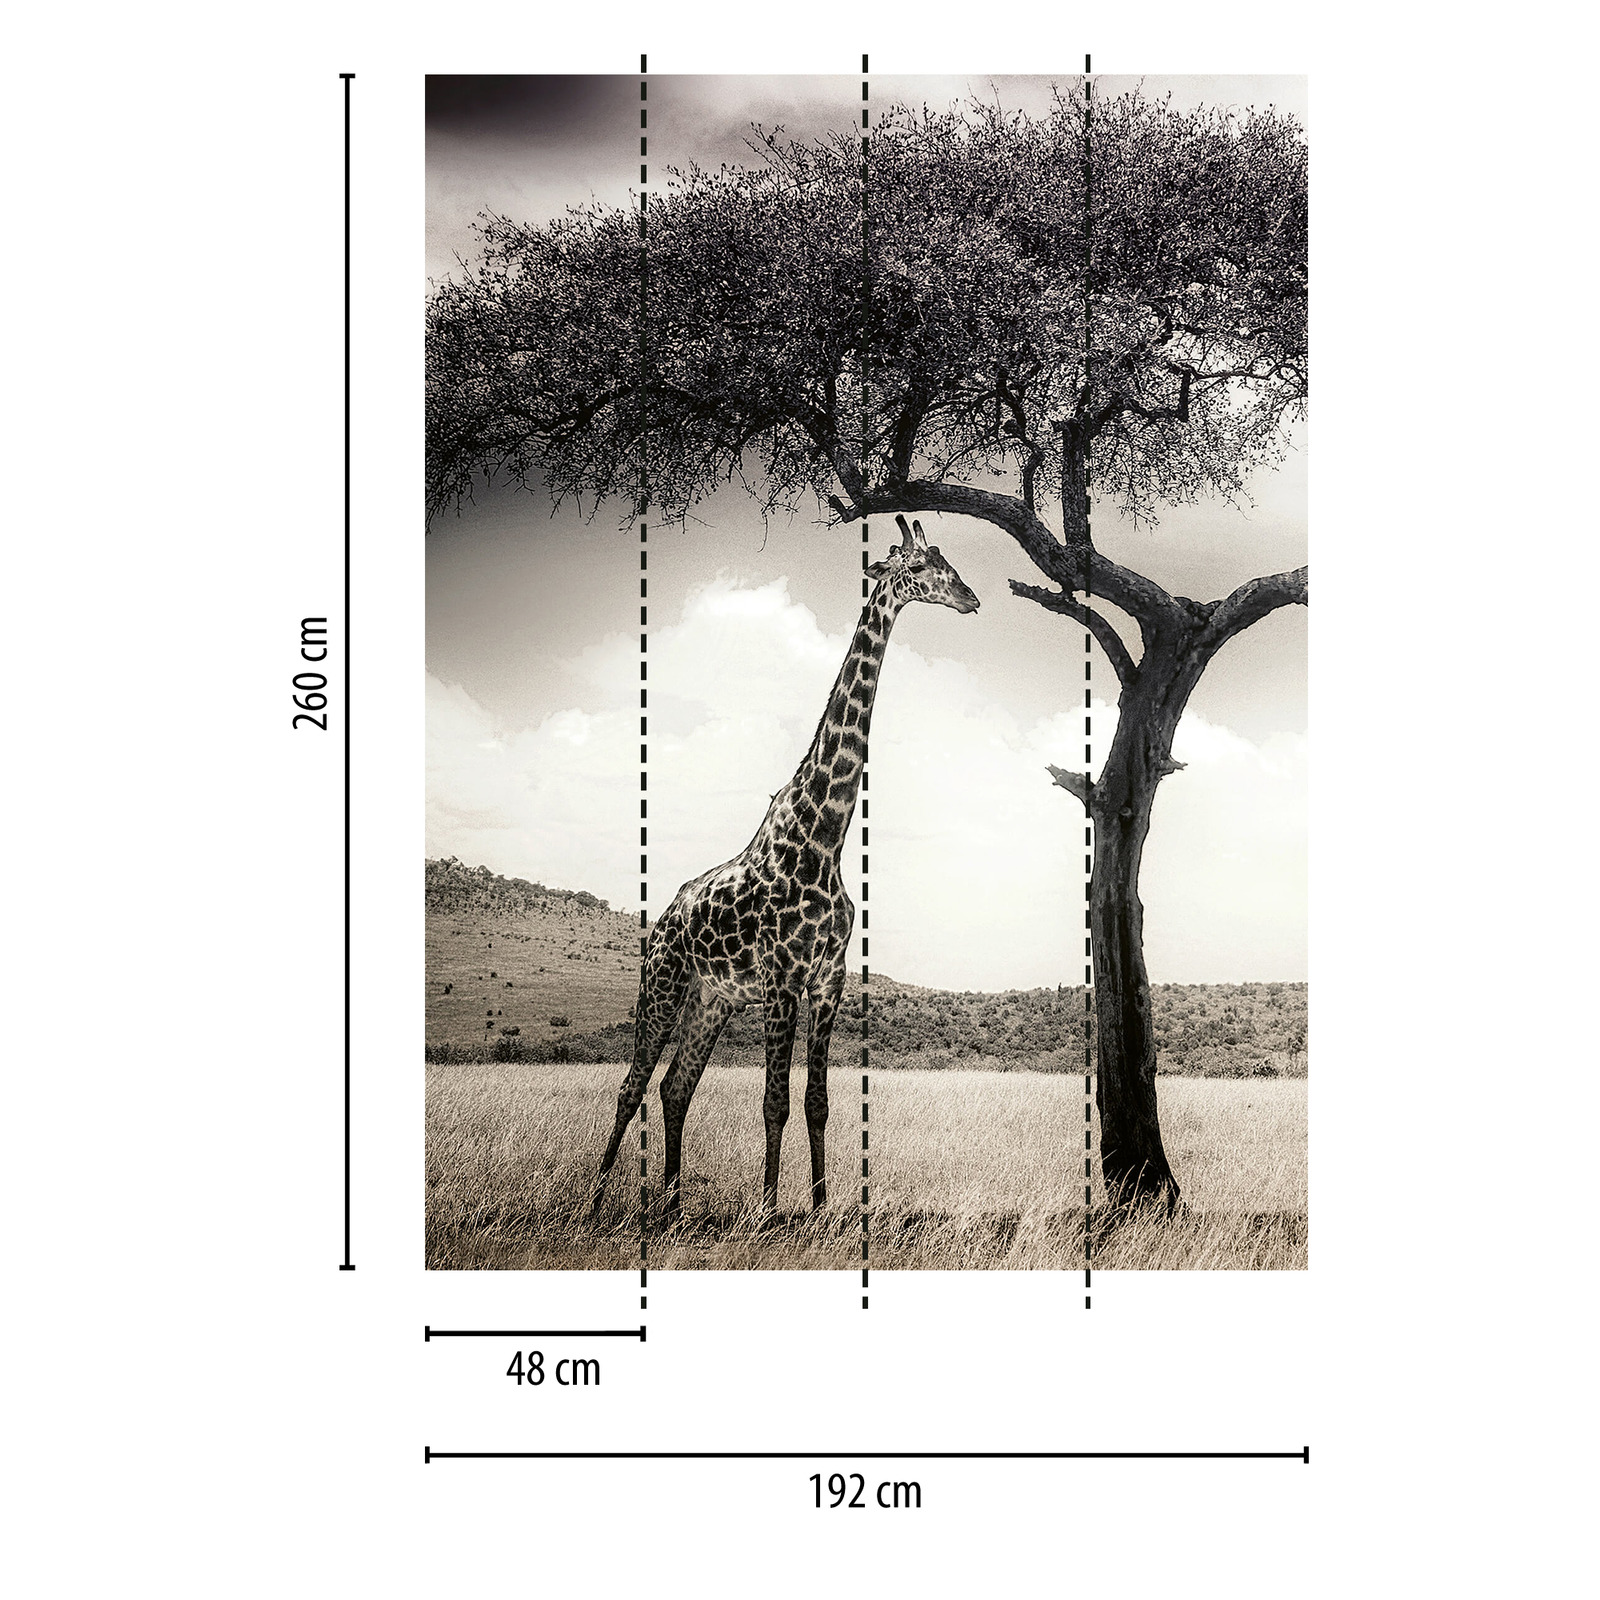             Giraffe in Savannah Behang - Grijs, Wit, Zwart
        